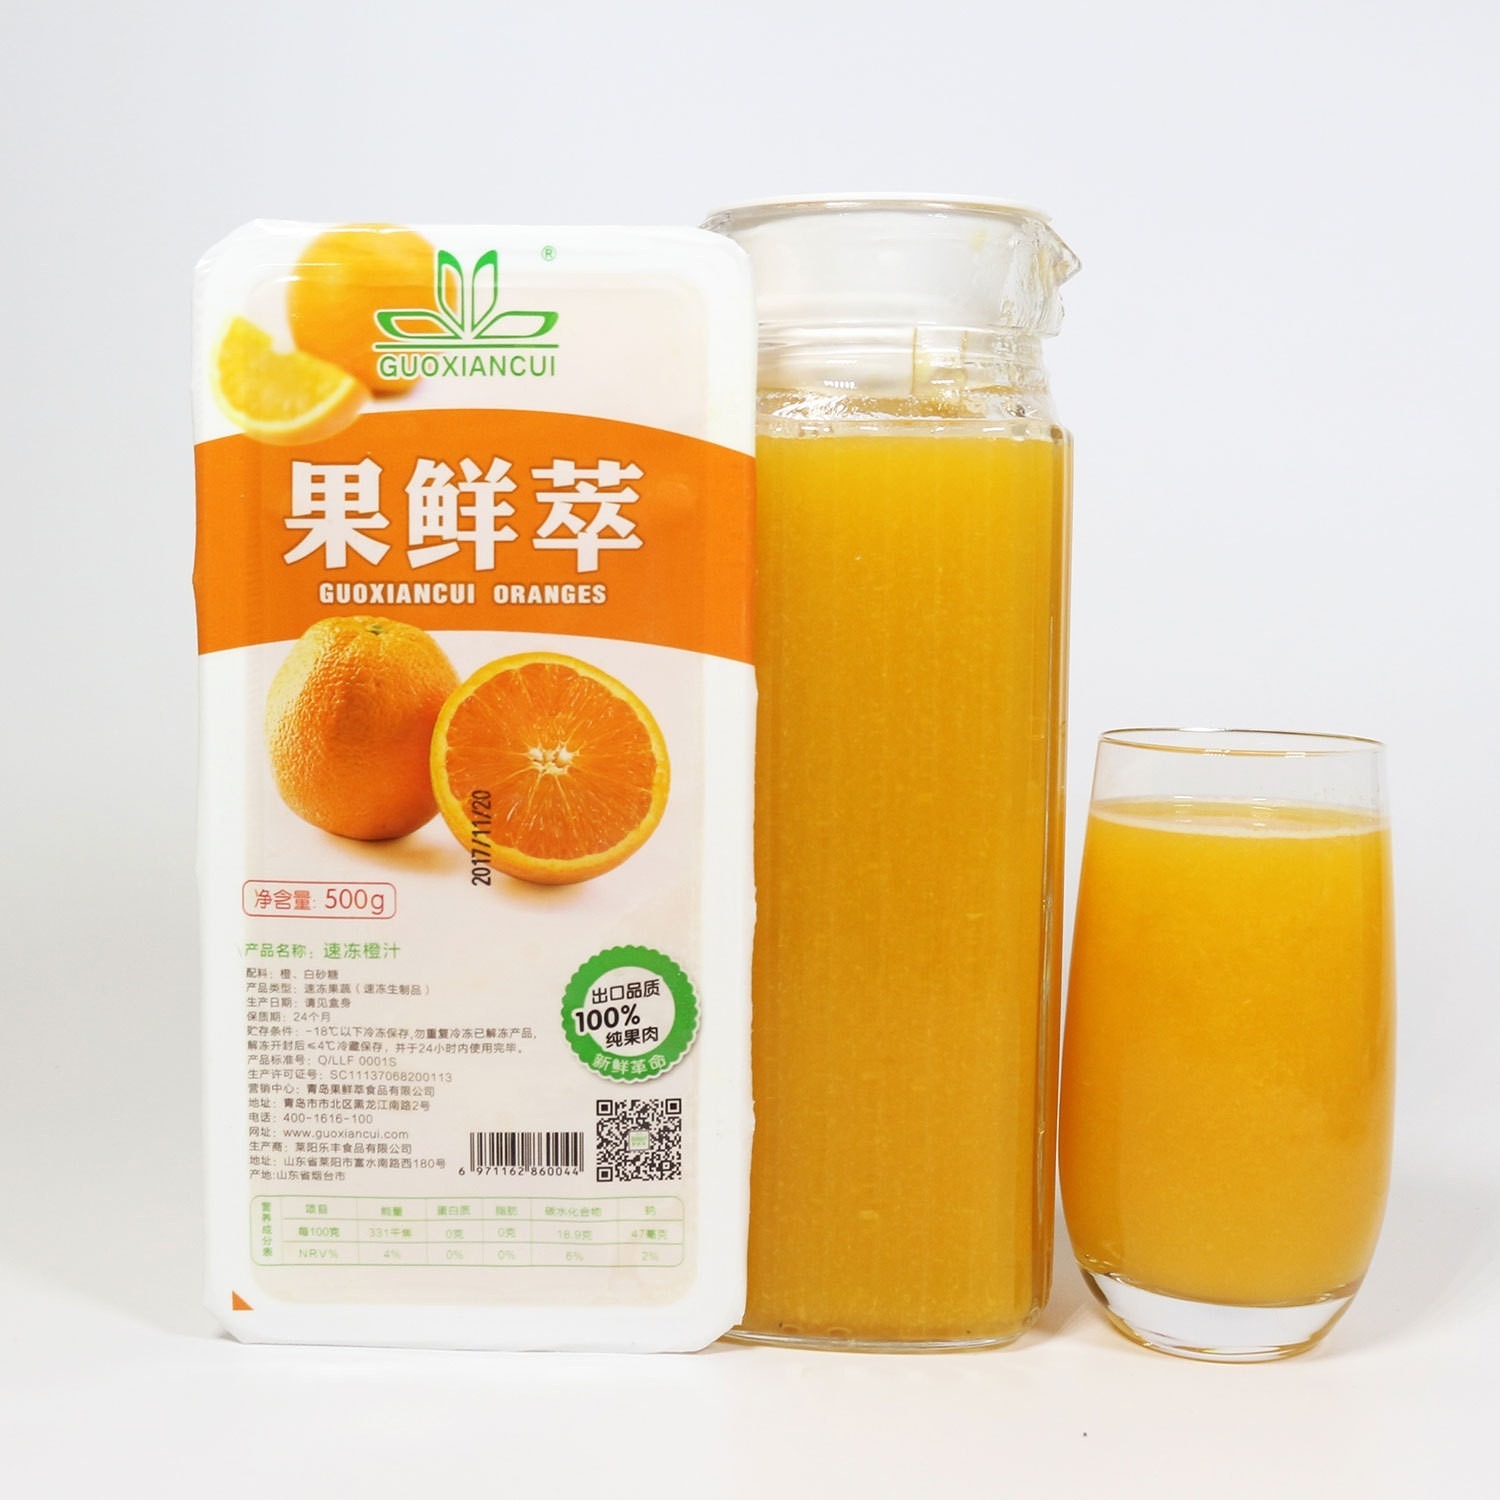 速冻甜橙 速冻橙汁 冷冻橙汁 甜橙汁 果鲜萃速冻果汁 圃丰食品 现榨果汁标准化产品图片